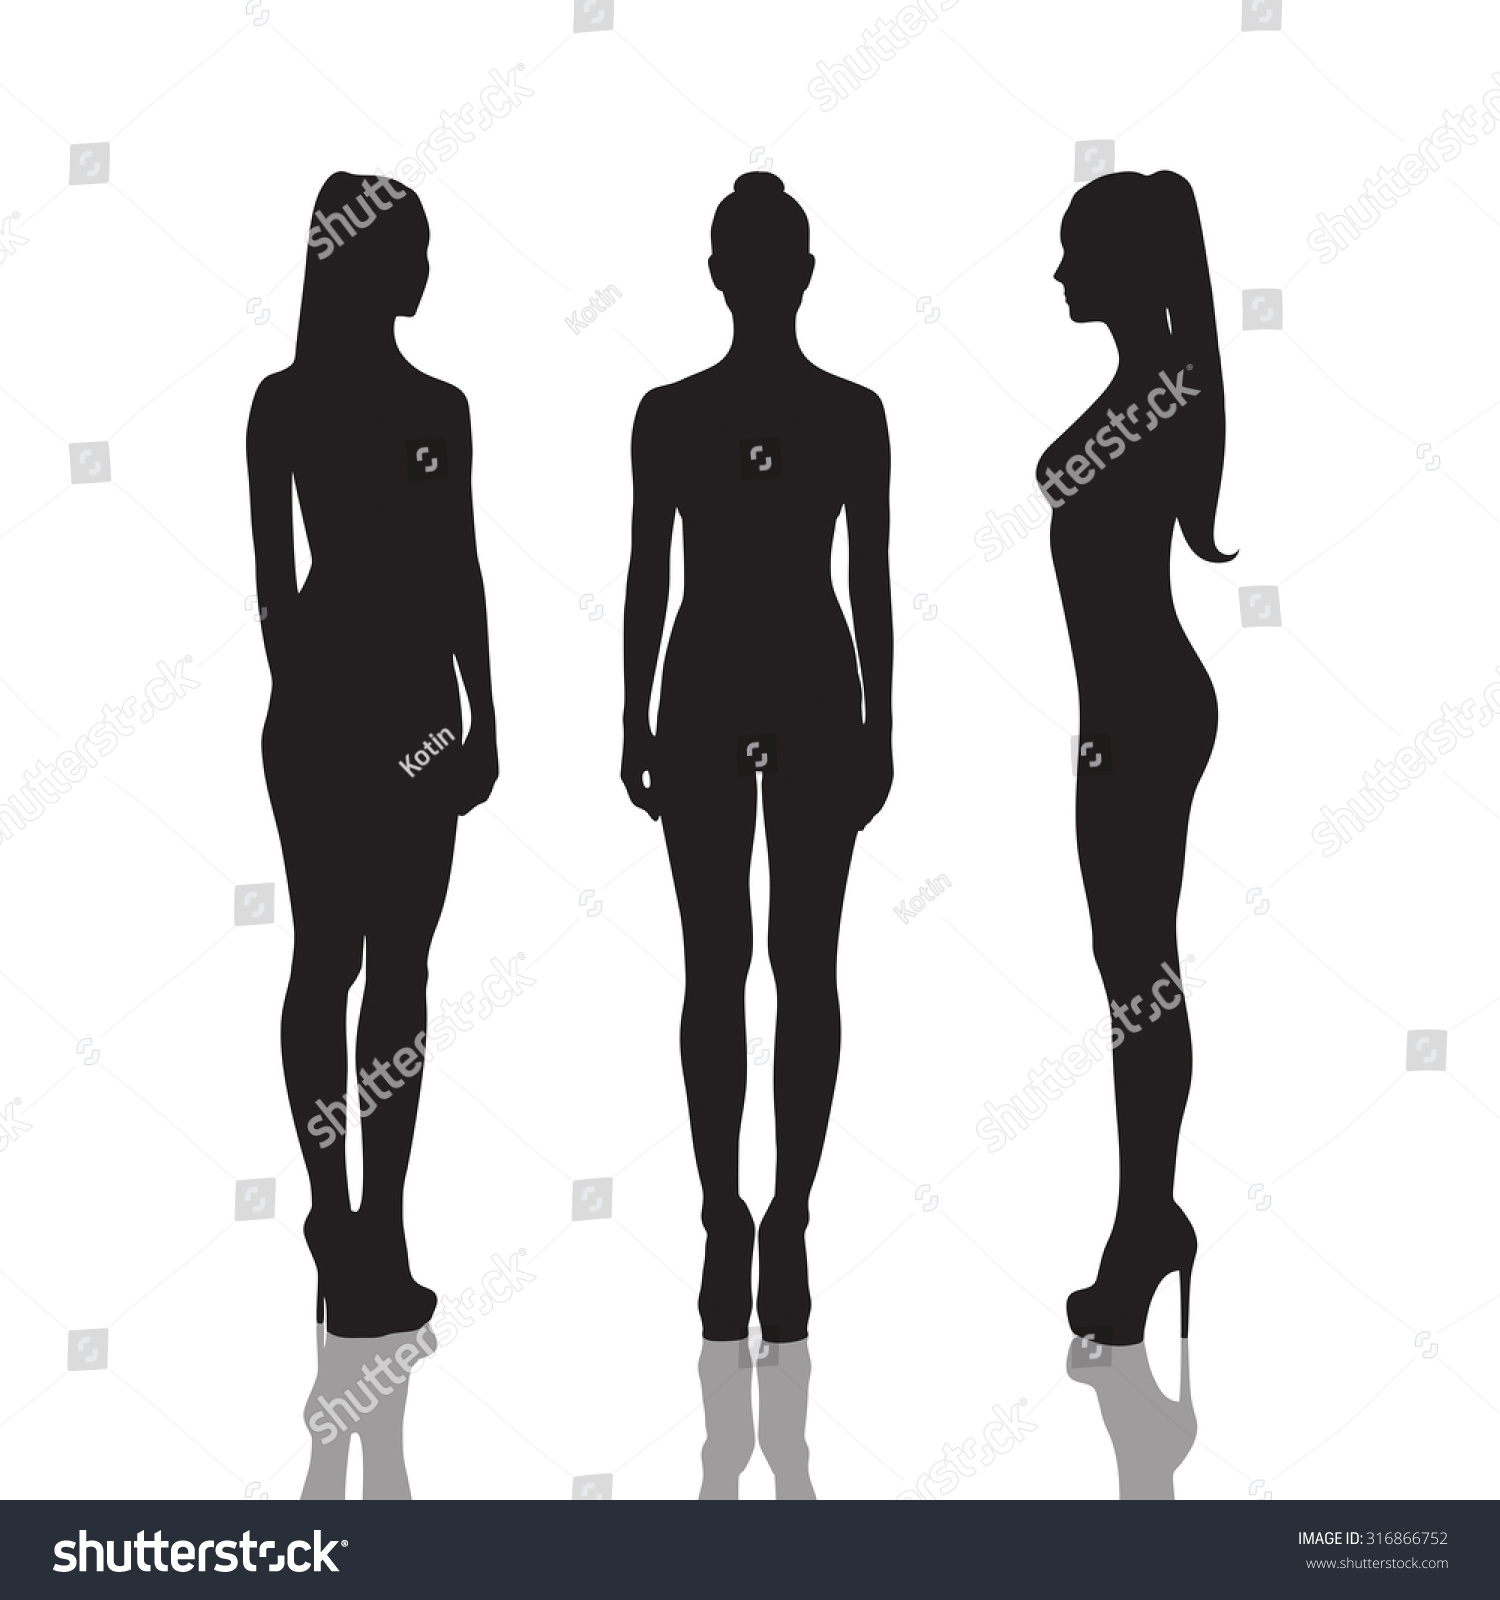 Siluetas de chicas hermosas y desnudas ilustración de stock Shutterstock